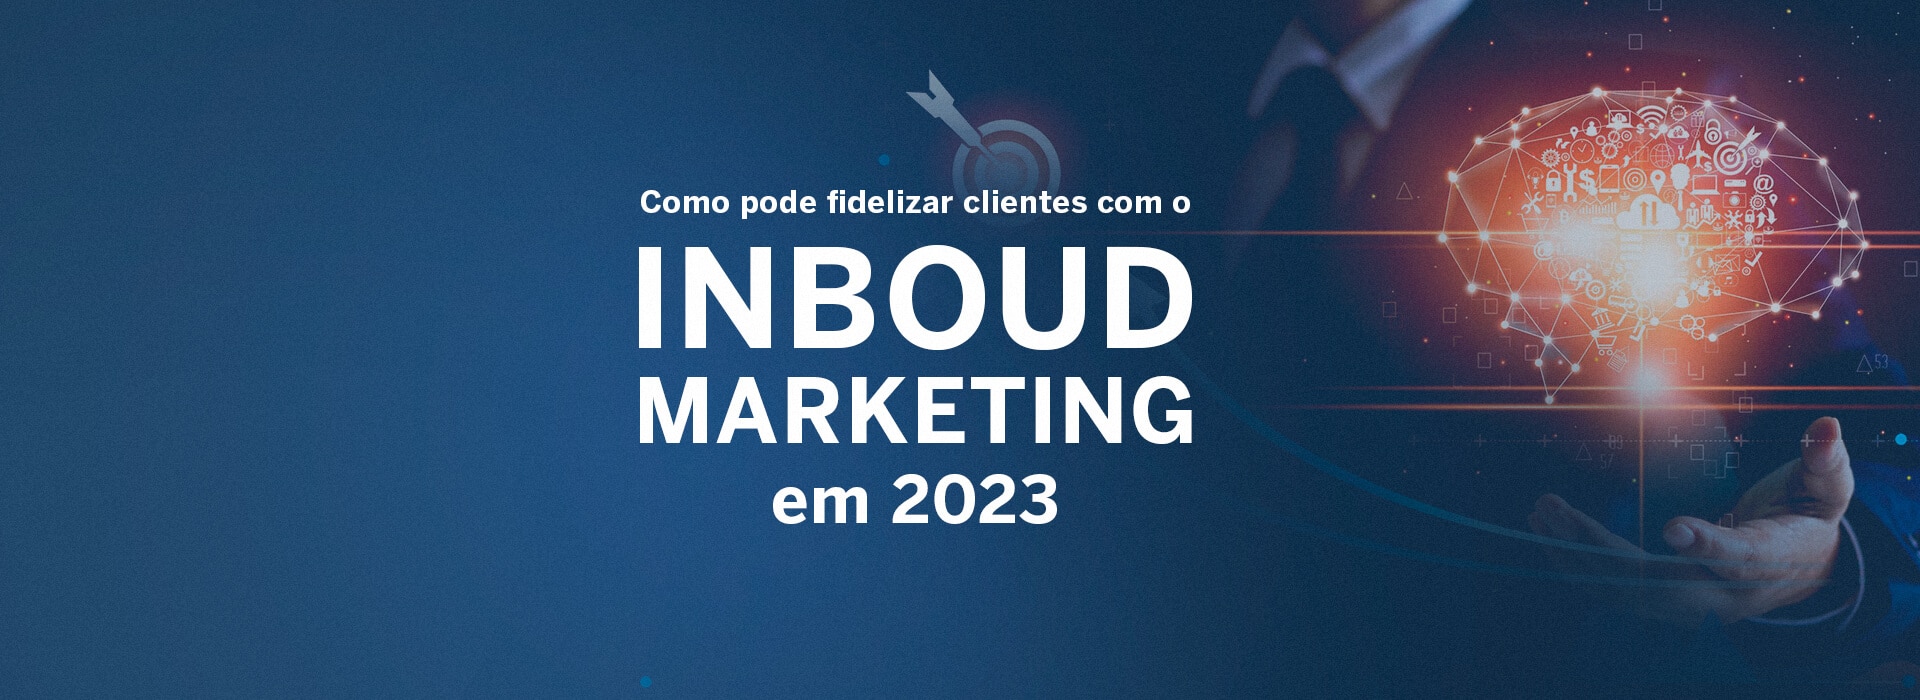 Como pode fidelizar clientes com o Inboud Marketing em 2023